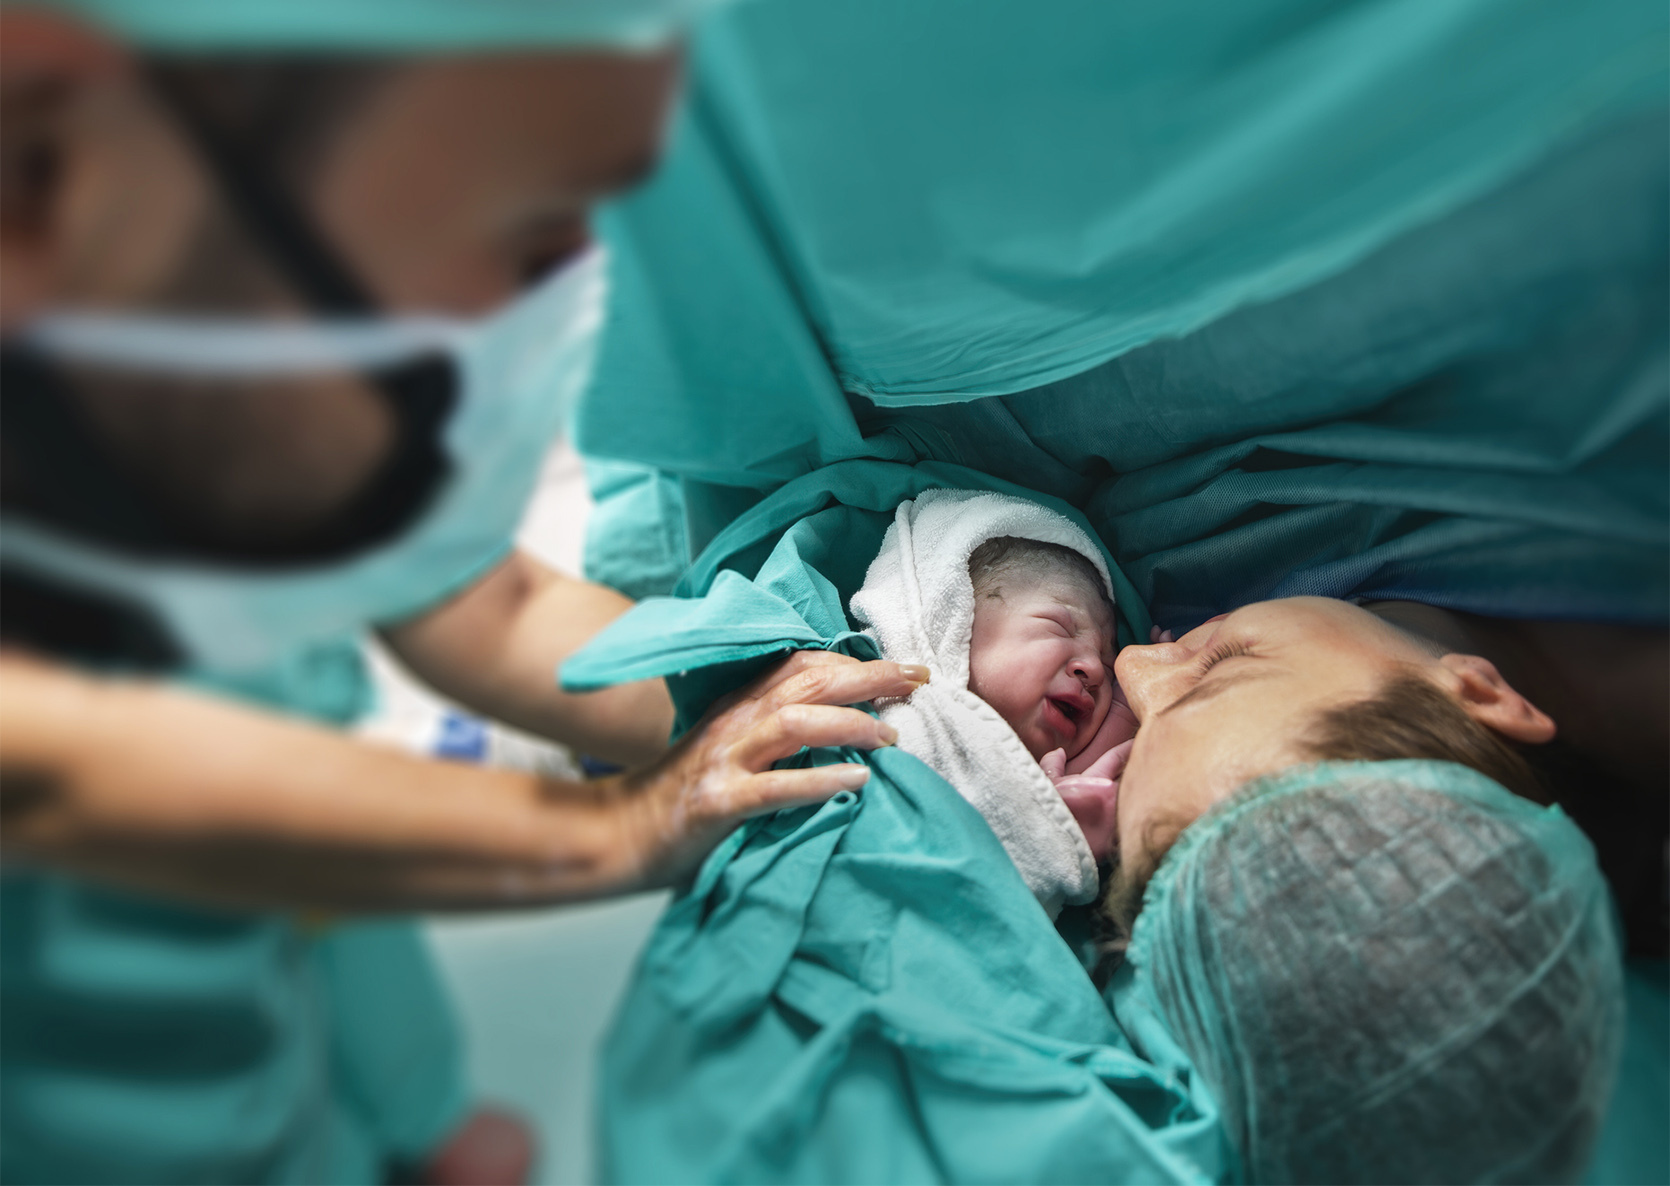 Zabiegi podczas porodu - co warto o nich wiedzieć?